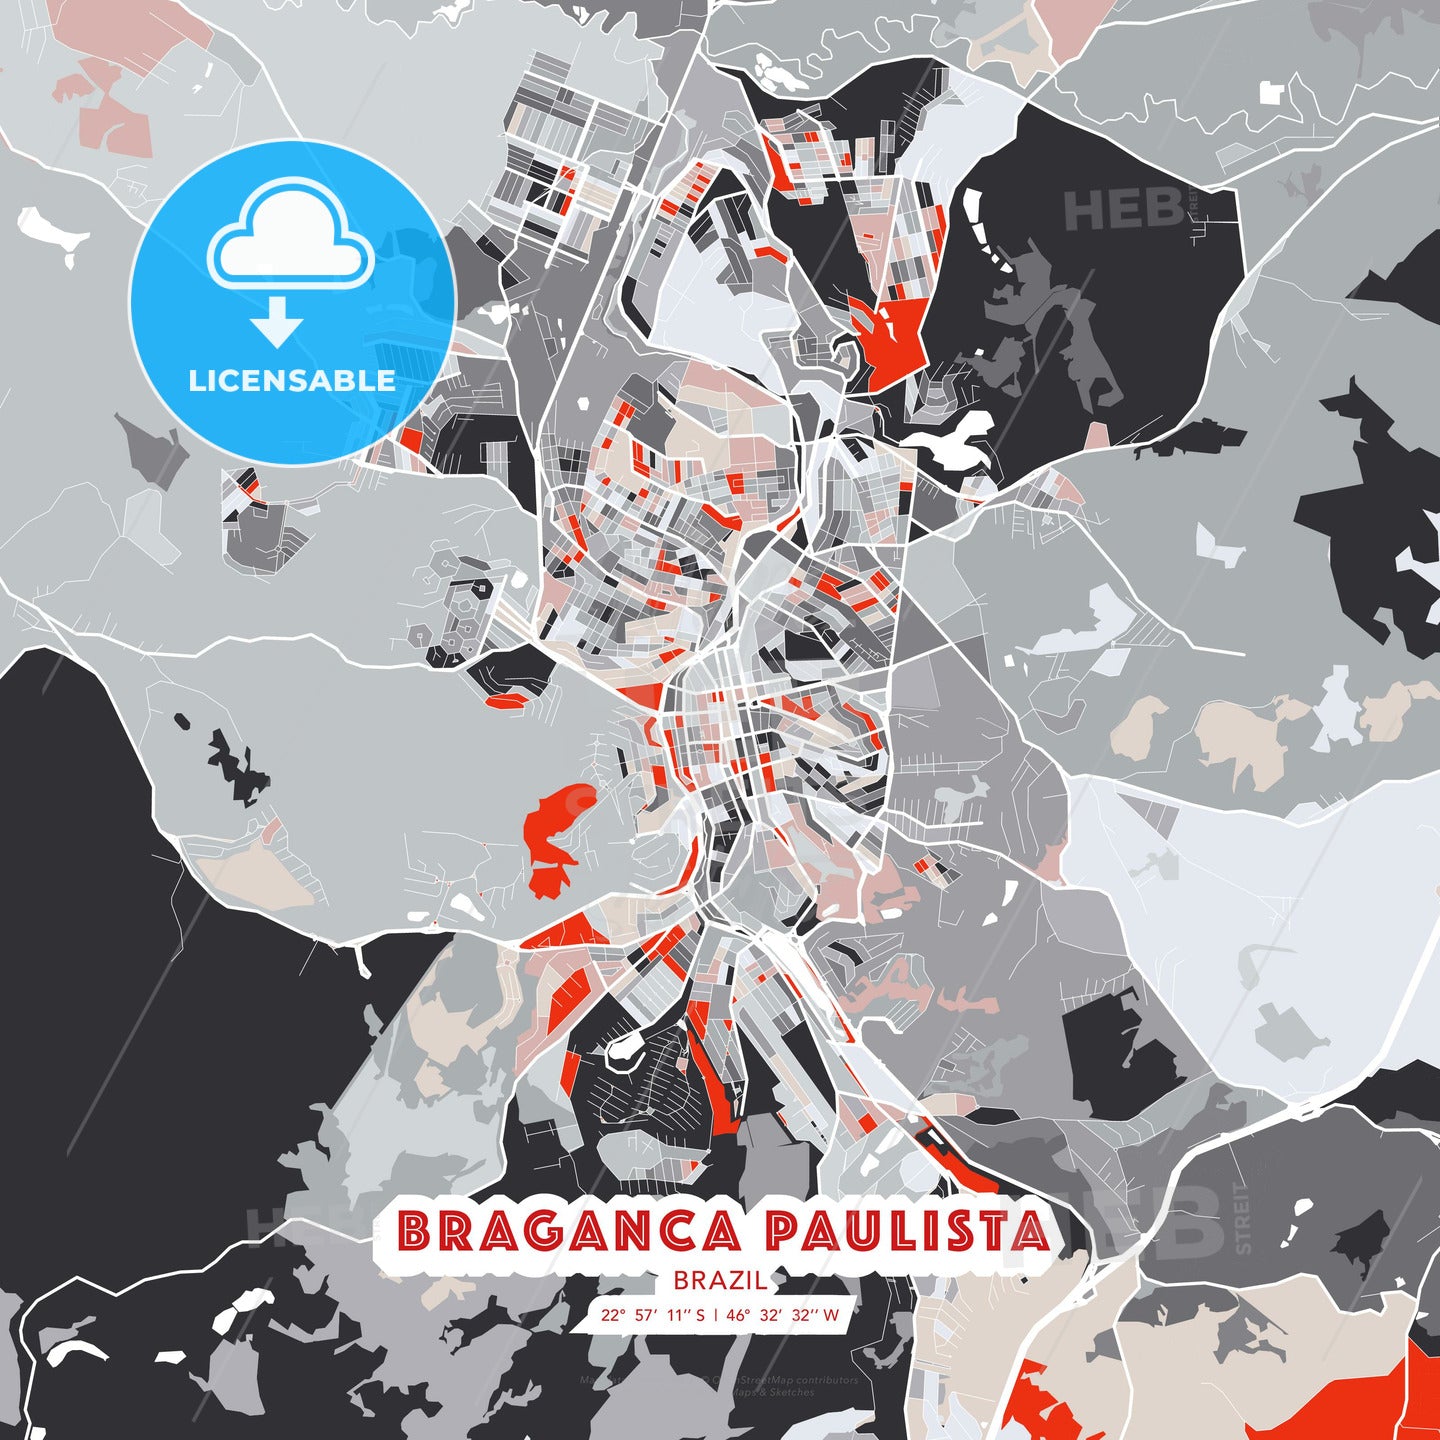 Braganca Paulista, Brazil, modern map - HEBSTREITS Sketches